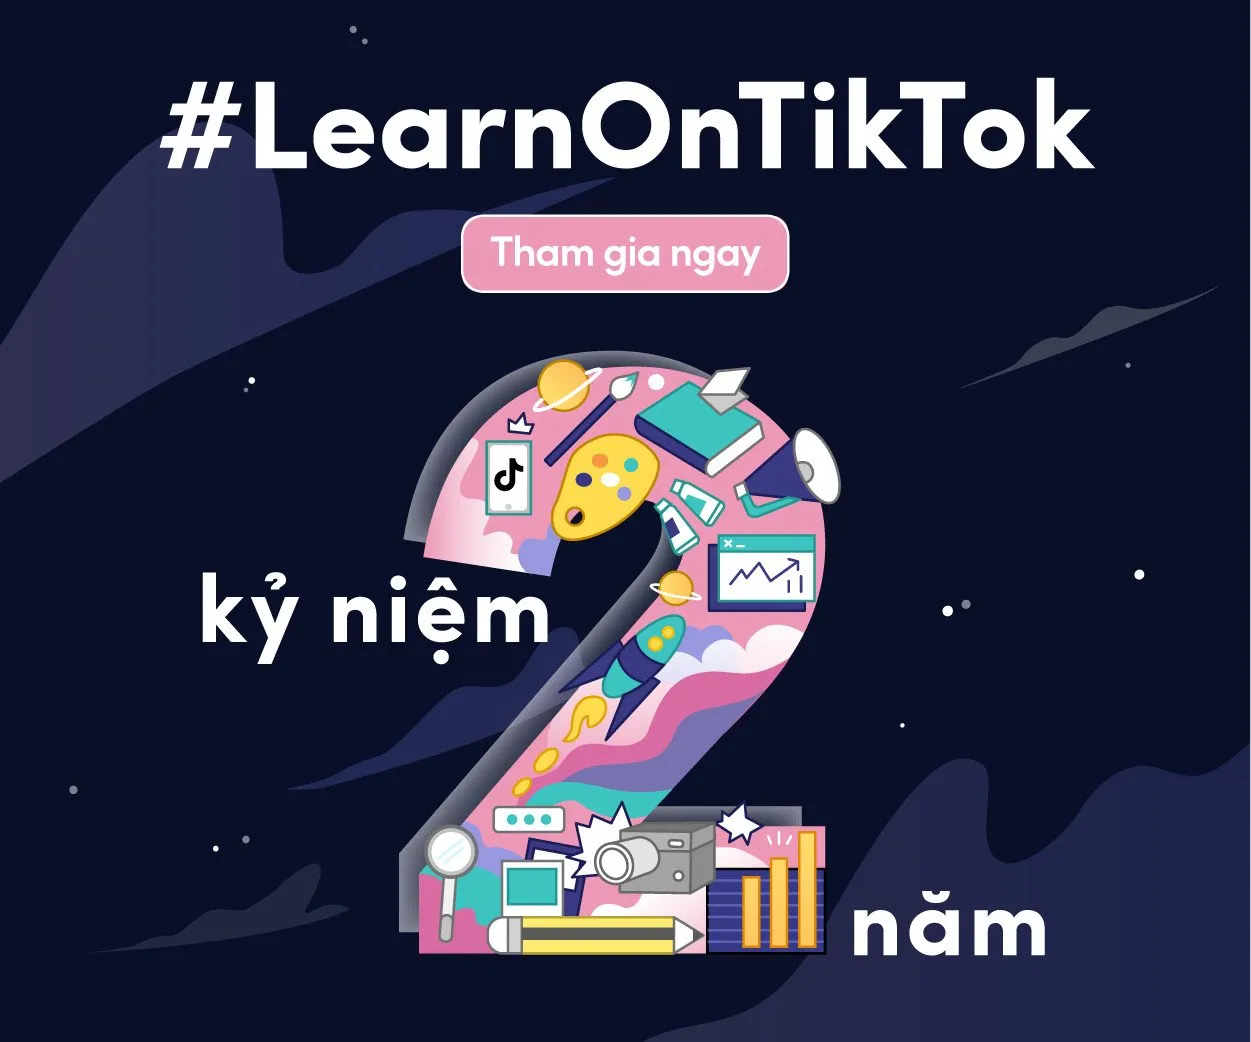 #LearnOnTikTok đã đạt được nhiều thành tựu sau 2 năm